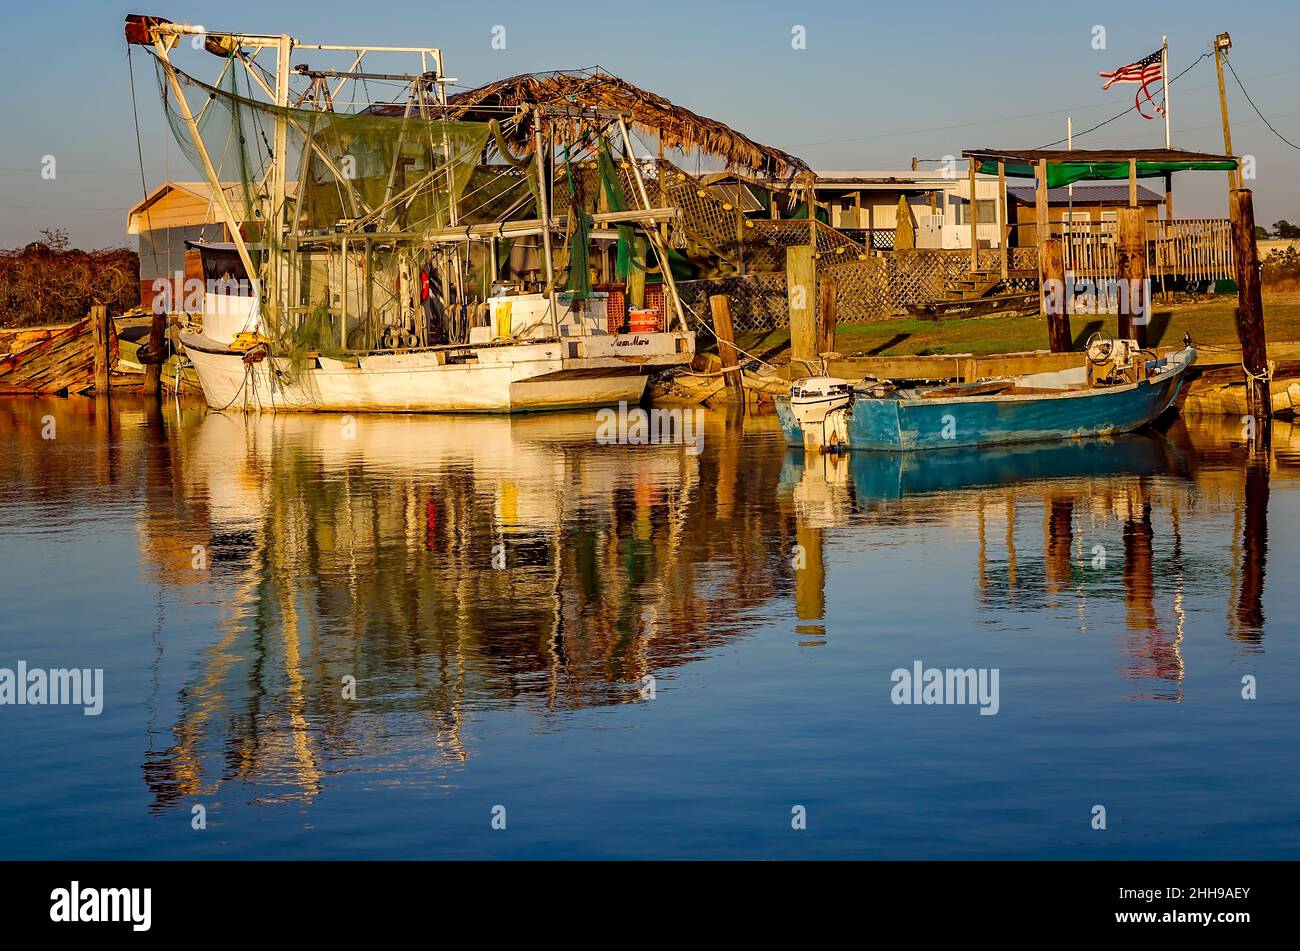 Al tramonto, 24 dicembre 2016, a Bayou la Batre, Alabama, sono raffigurati una barca per gamberetti e uno skiff di ostriche. La città è conosciuta come la capitale del pesce dell'Alabama. Foto Stock